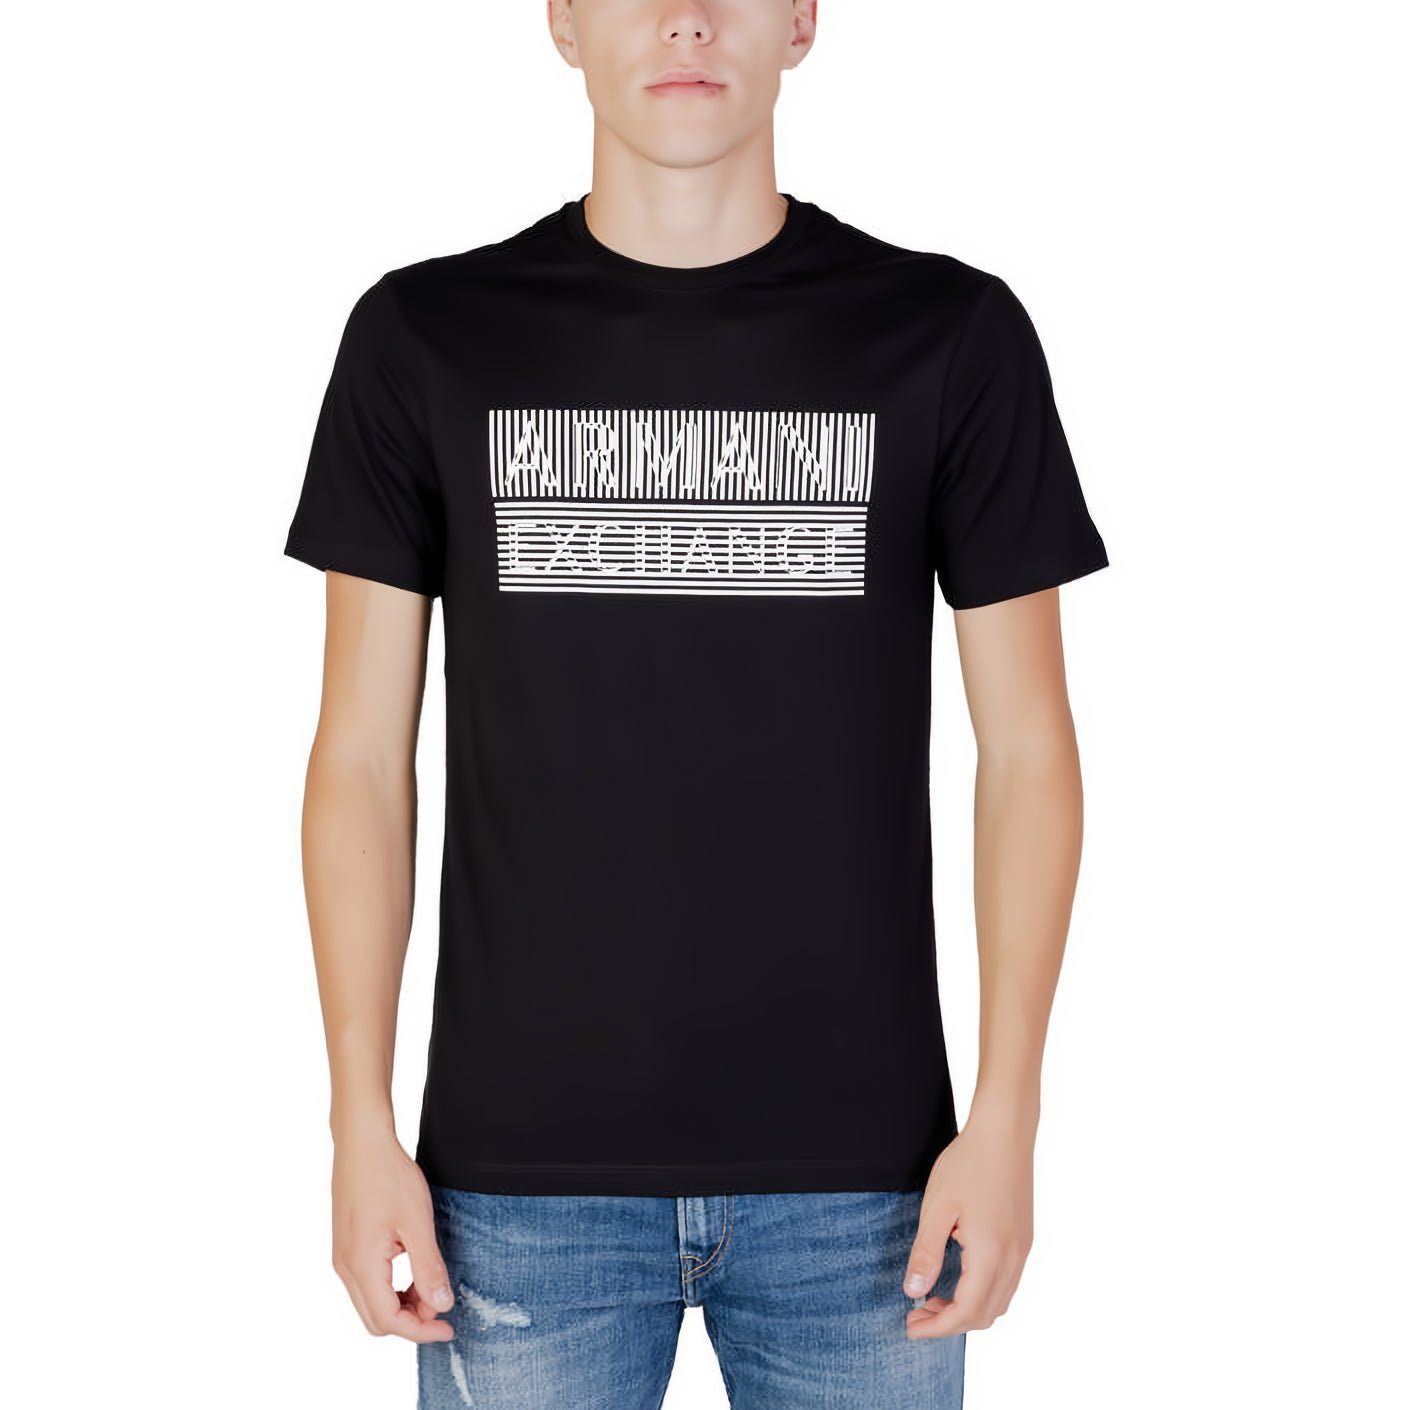 ARMANI EXCHANGE Rundhals, Ihre Kleidungskollektion! T-Shirt kurzarm, ein Must-Have für